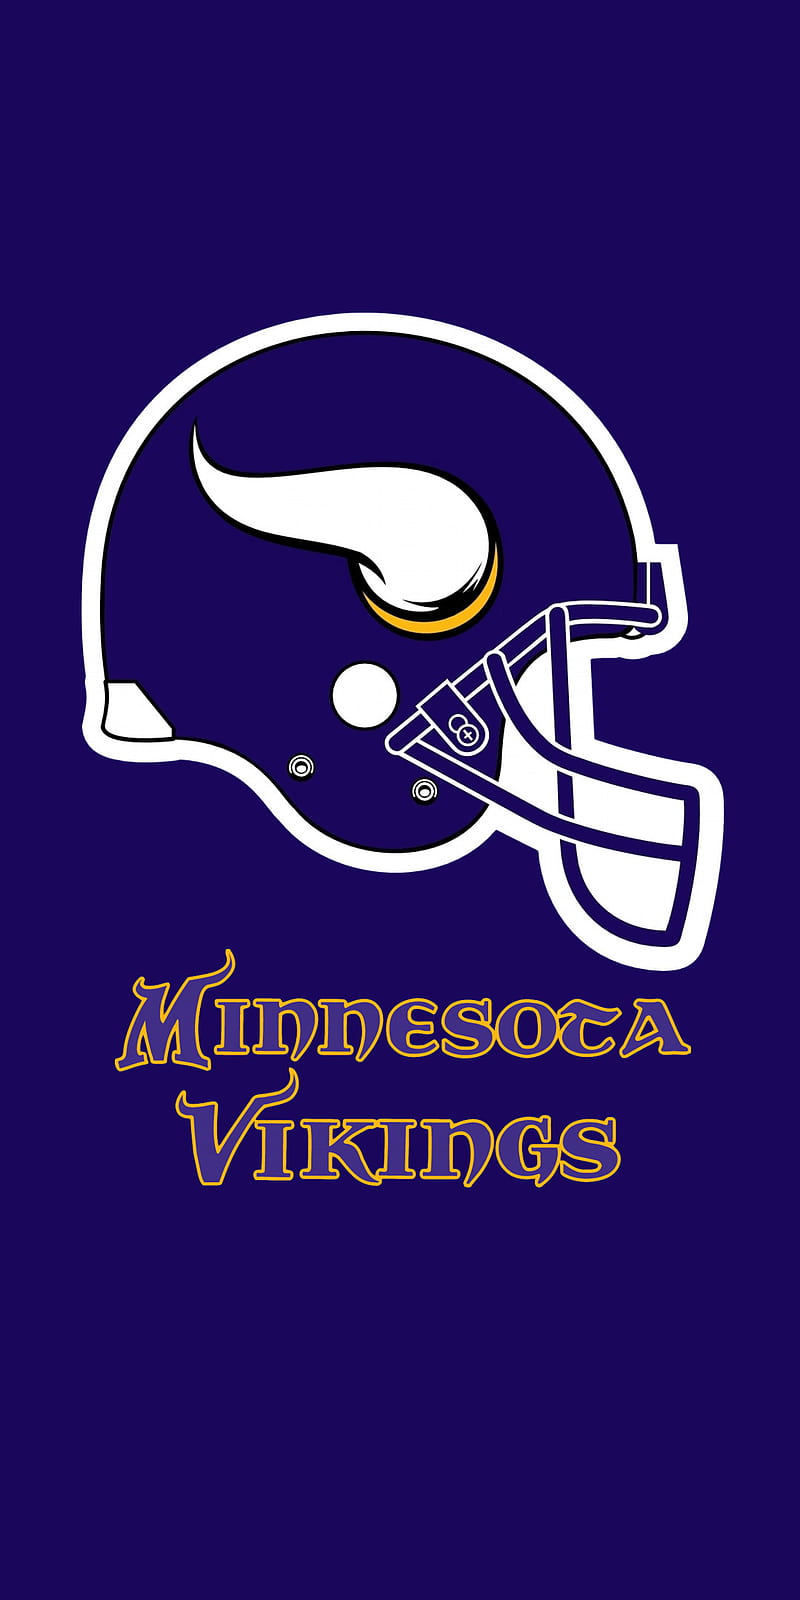 Minnesota Vikings Wallpapers  Top 35 Best Minnesota Vikings Wallpapers  Download